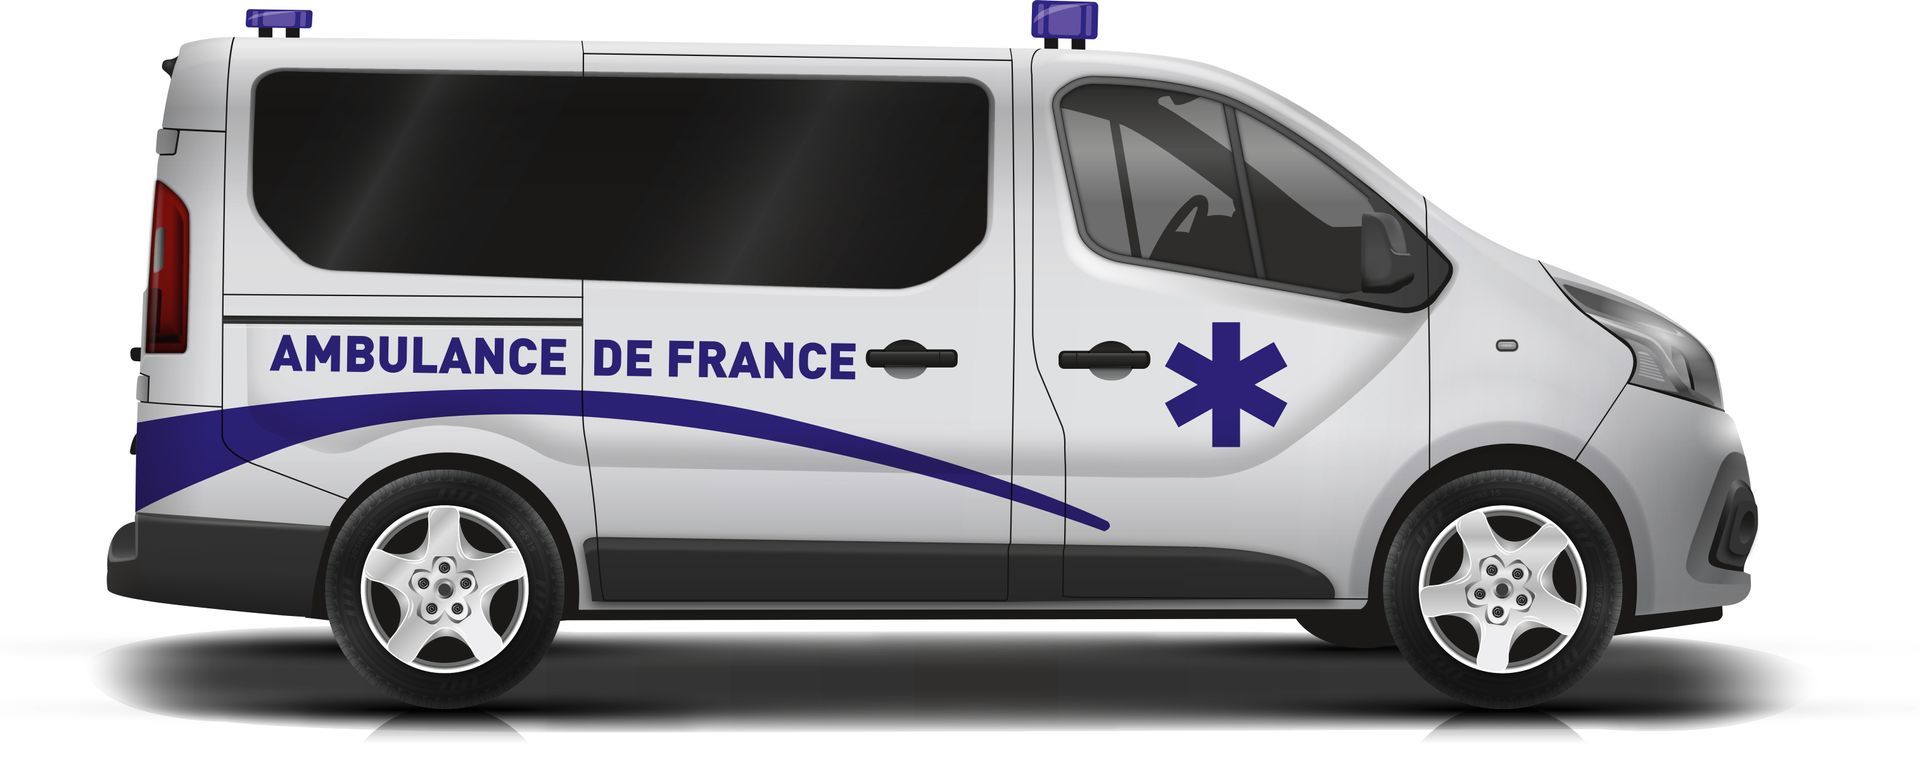 Une ambulance de France, blanche et bleue, vue de côté